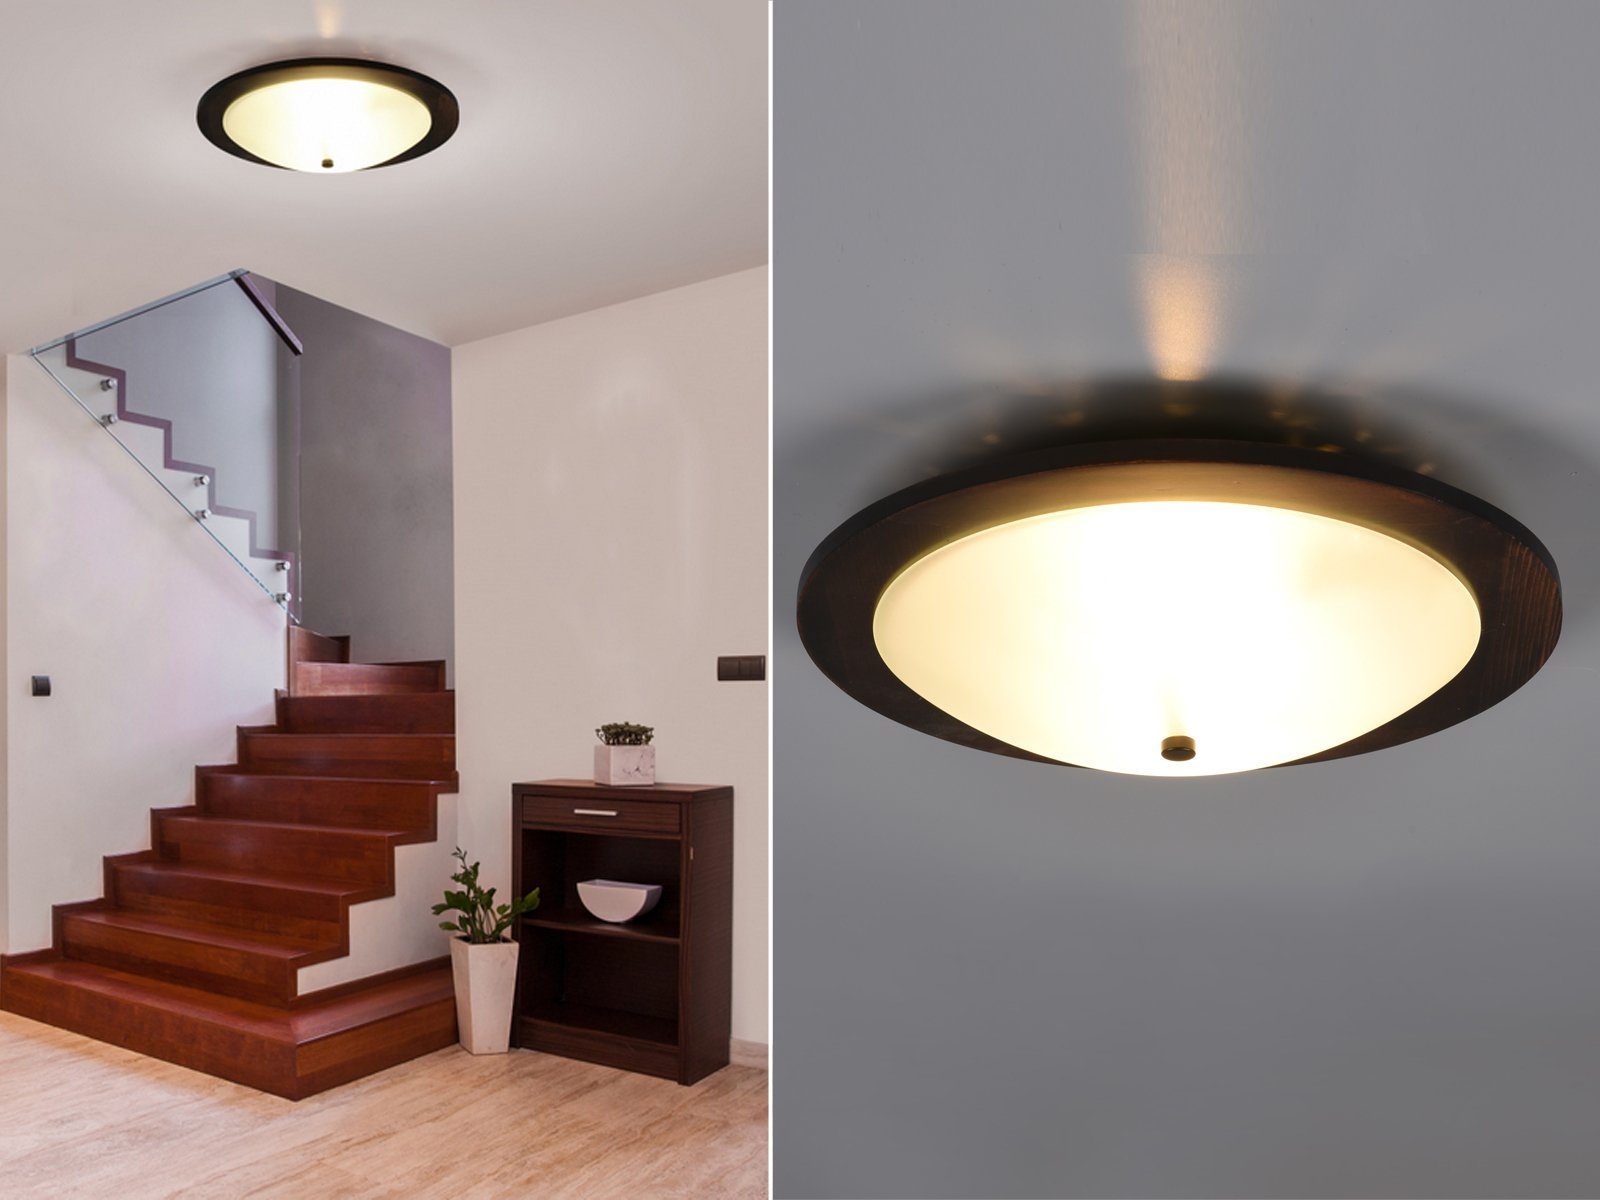 Braun/ meineWunschleuchte Ø32cm Design-klassiker LED Deckenschalen rustikal, Holz Holz-lampe rund-e LED Braun Warmweiß, Deckenleuchte, Weiß wechselbar,